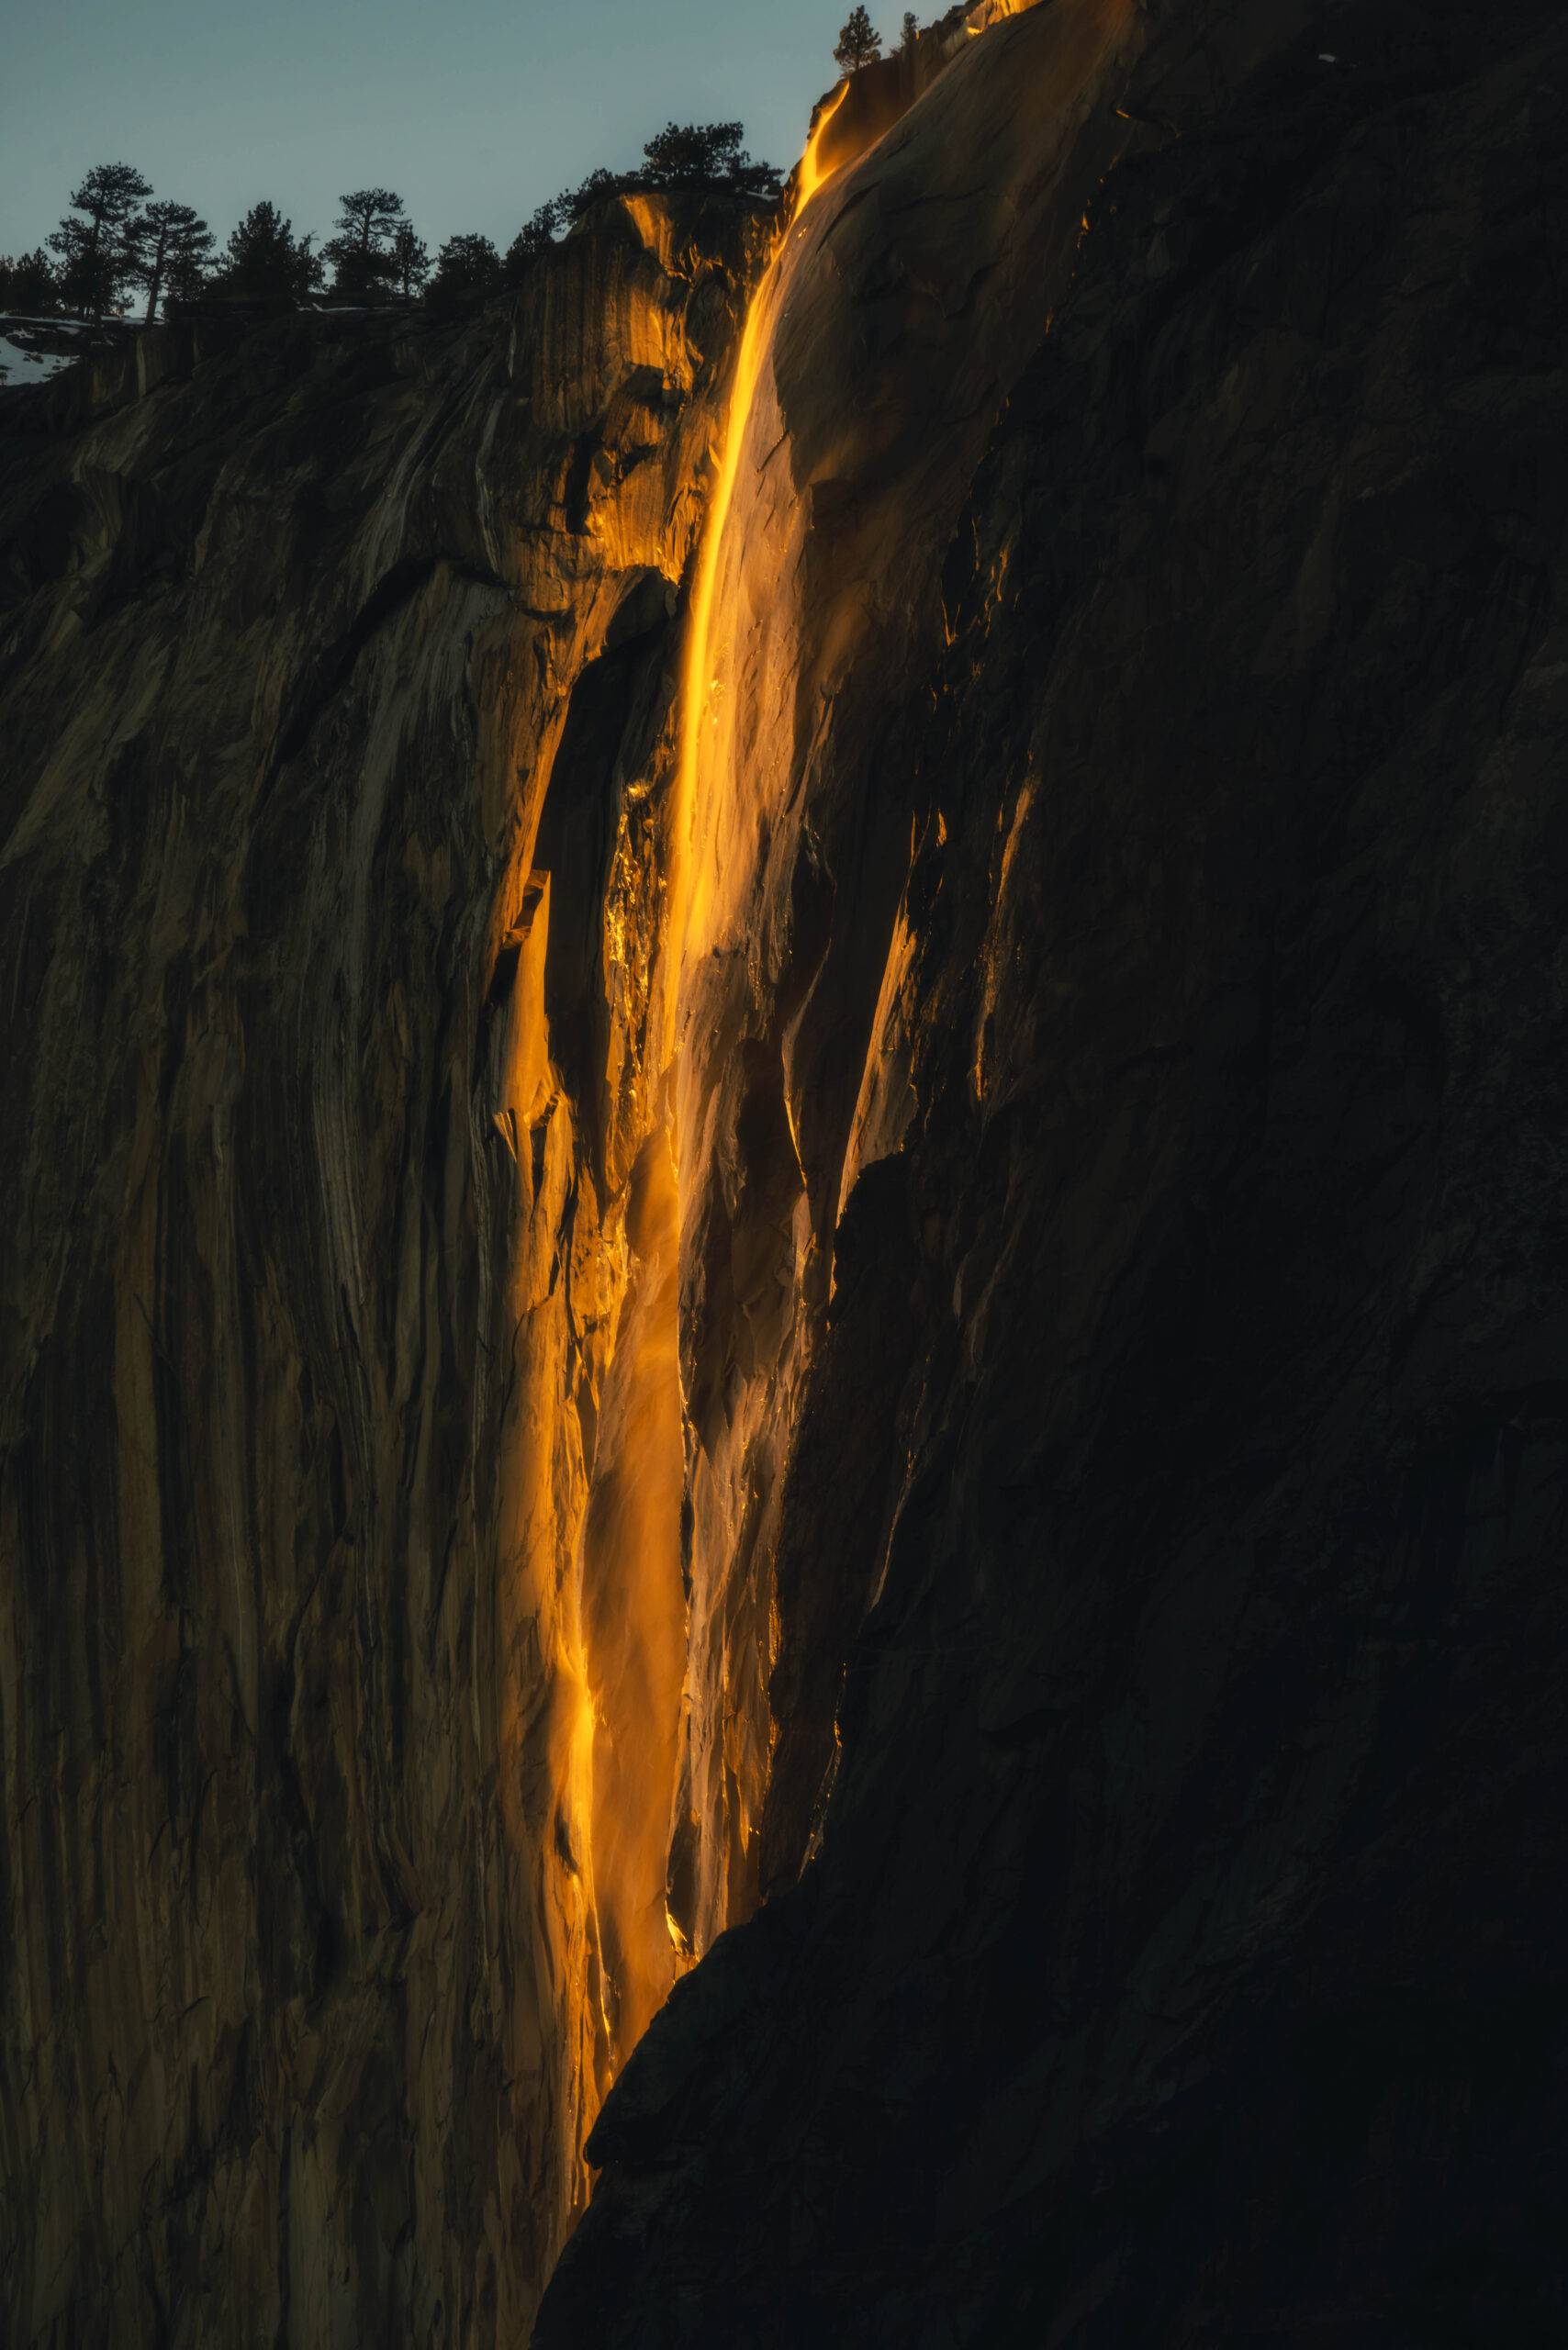 Viewing Yosemite Firefall at sunset